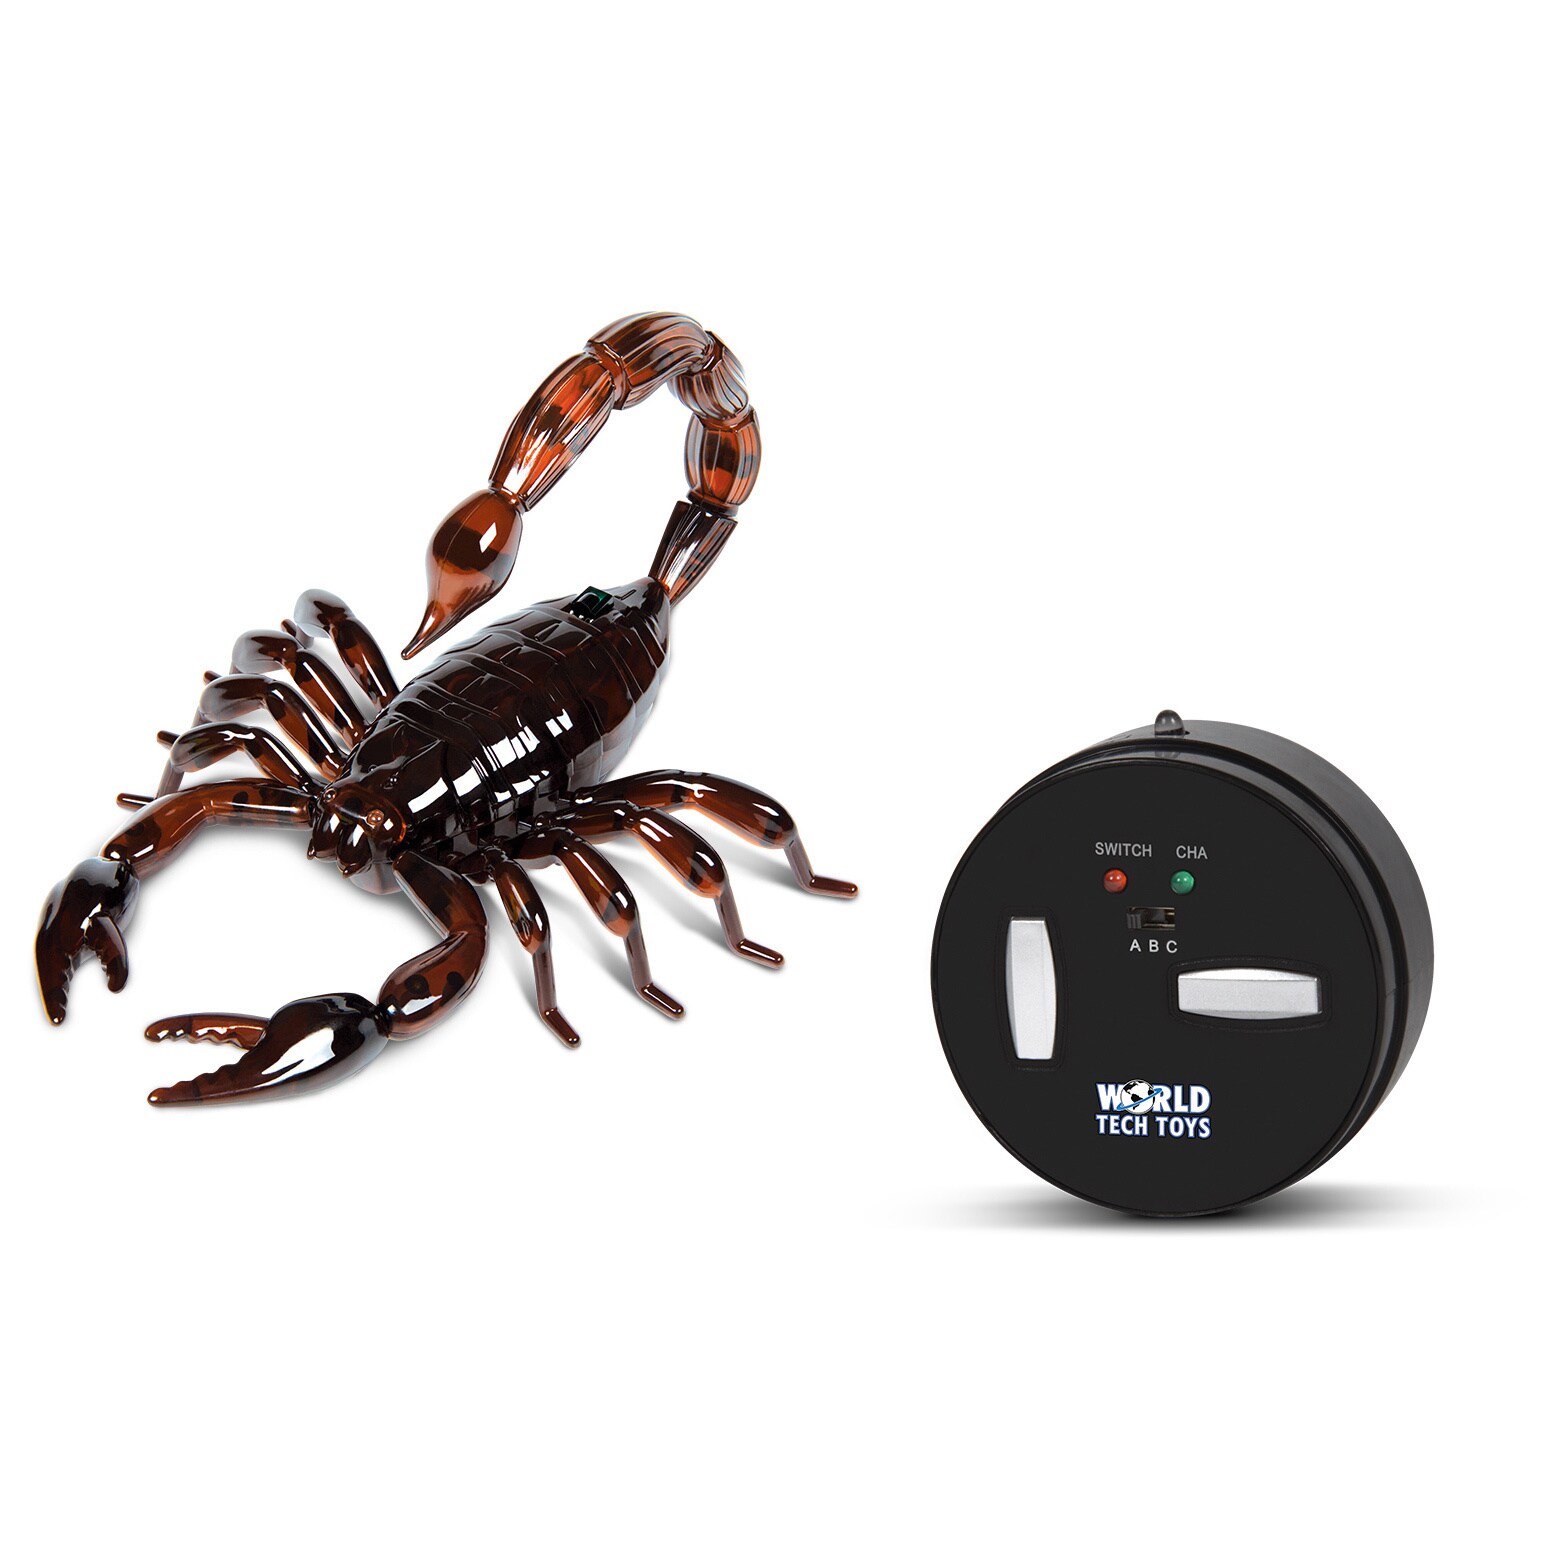 remote control scorpion